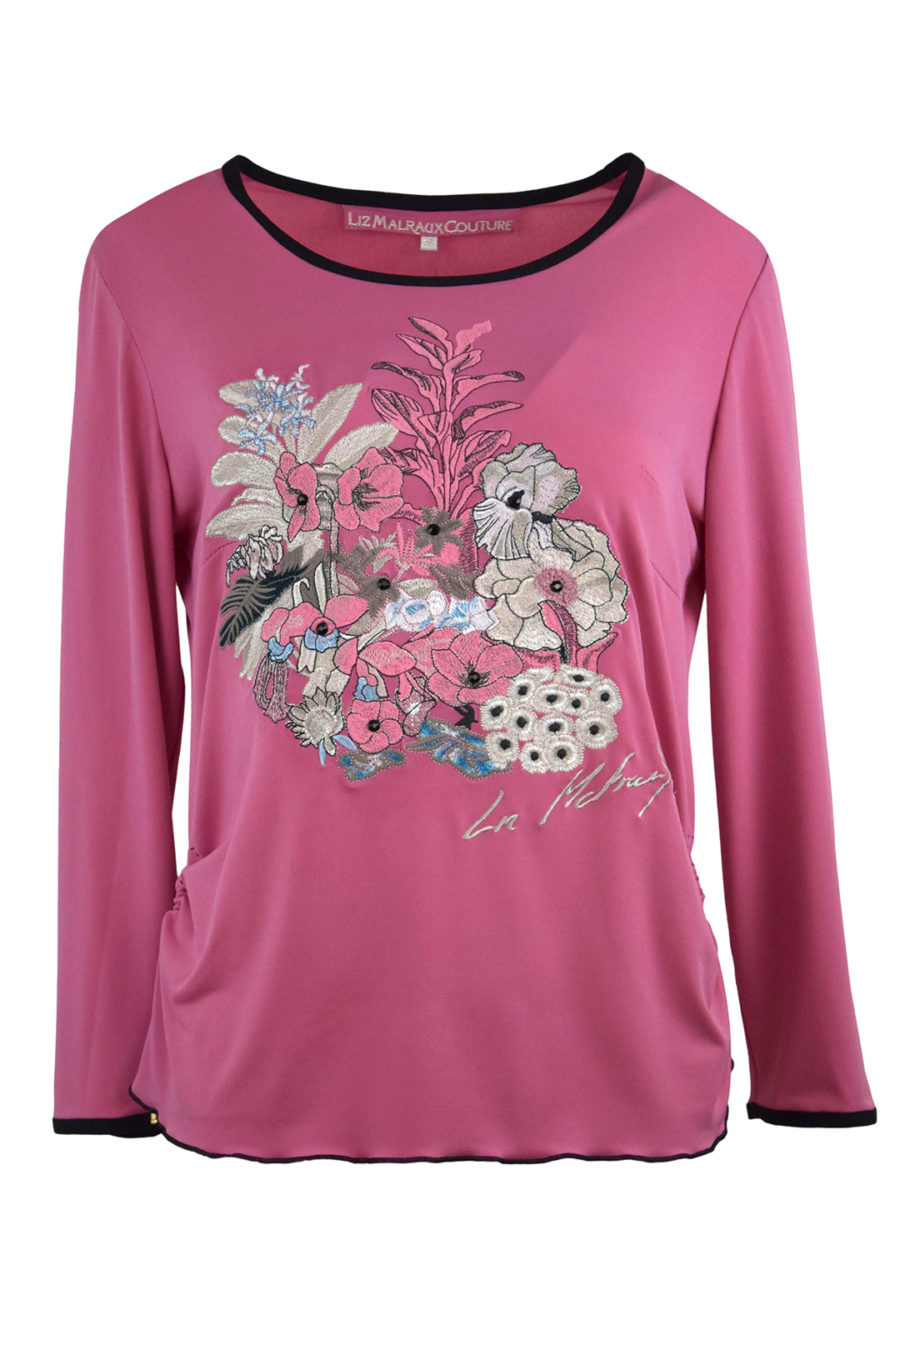 Shirt mit multicolor "garden-embroidery", 8 handapplizierten Kristallen und Natursteinen, Kurzarm